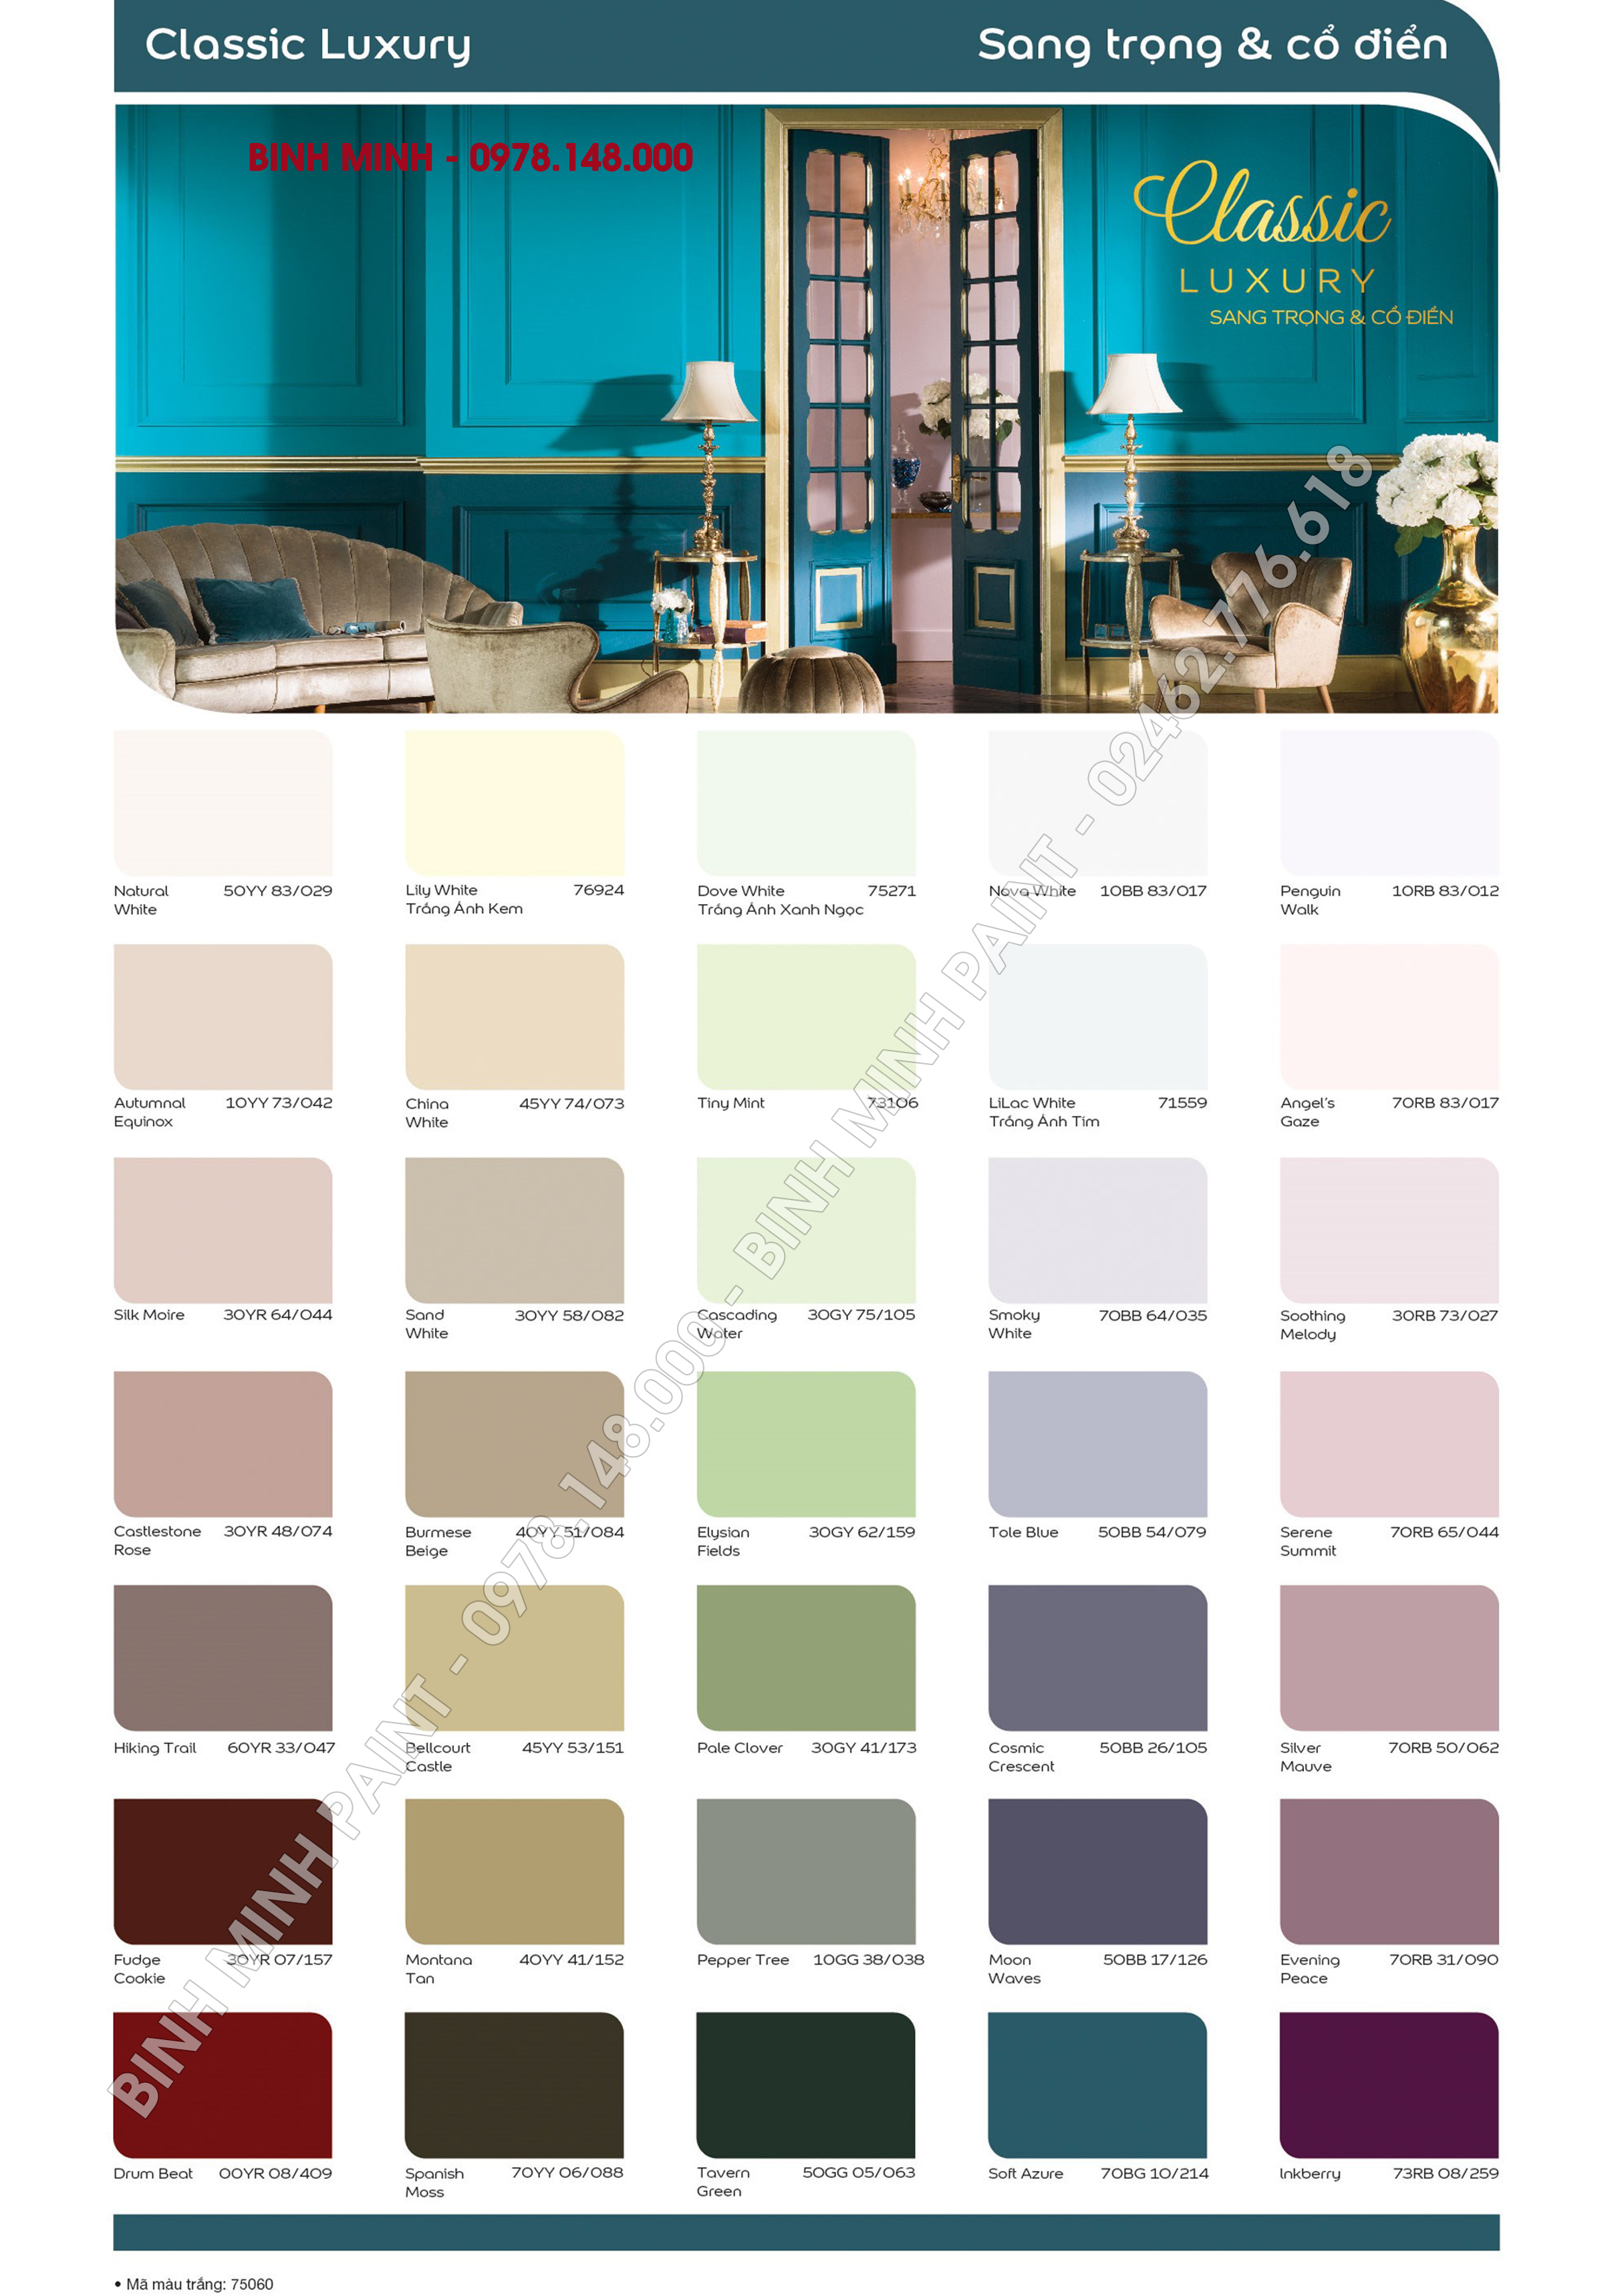 Bảng màu sơn Dulux 5 in 1 là một công cụ cần thiết cho những ai yêu thích nghệ thuật trang trí nội thất. Với 5 màu sắc khác nhau, bạn có thể thỏa sức sáng tạo và tìm ra hoàn hảo màu sơn phù hợp cho ngôi nhà của mình.